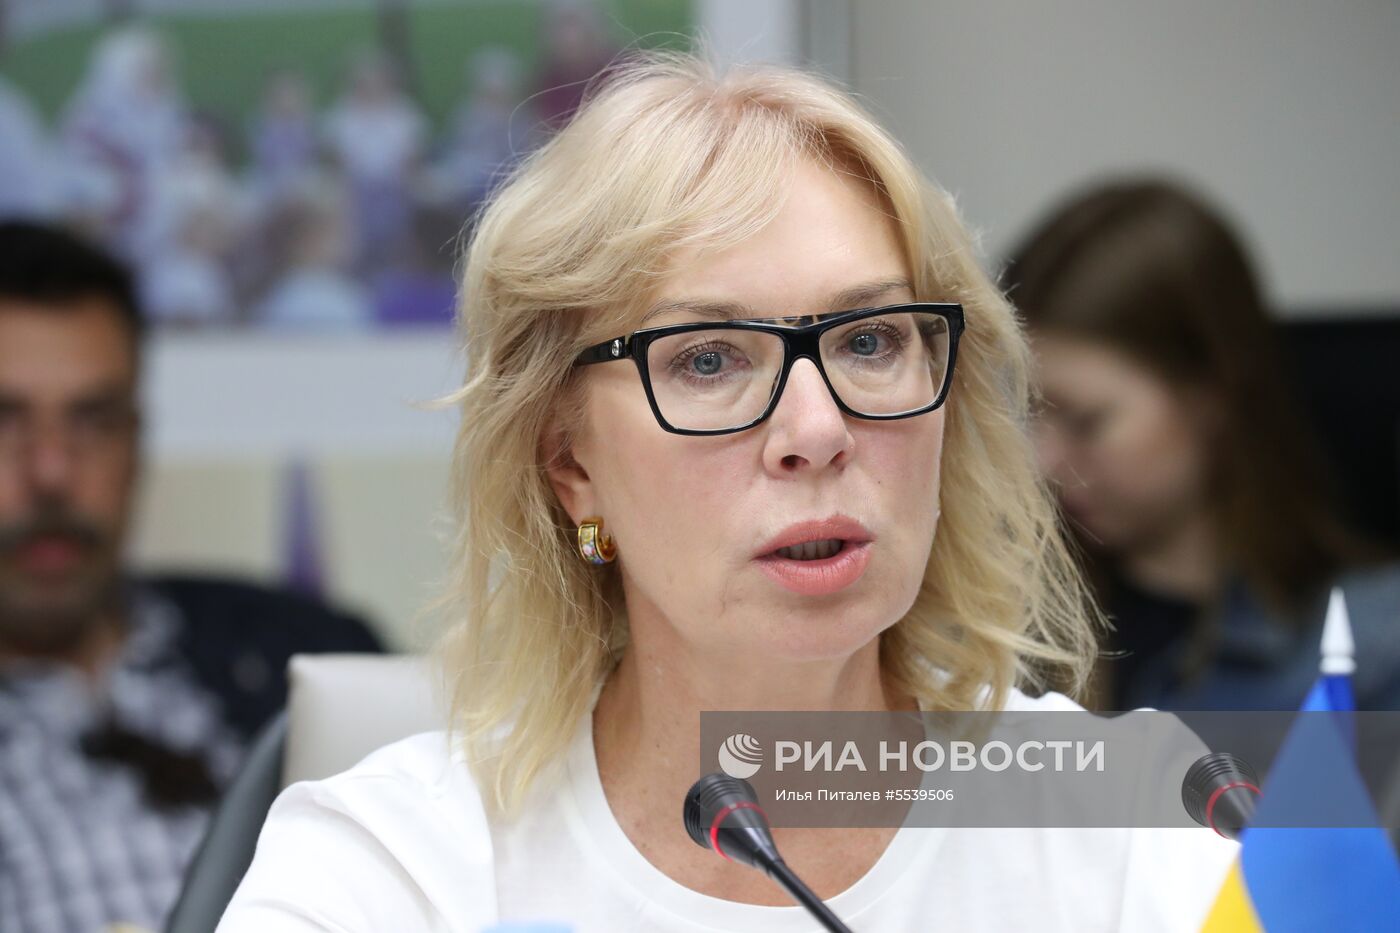 Уполномоченный по правам человека в России Т. Москалькова провела встречу с украинской коллегой Л. Денисовой